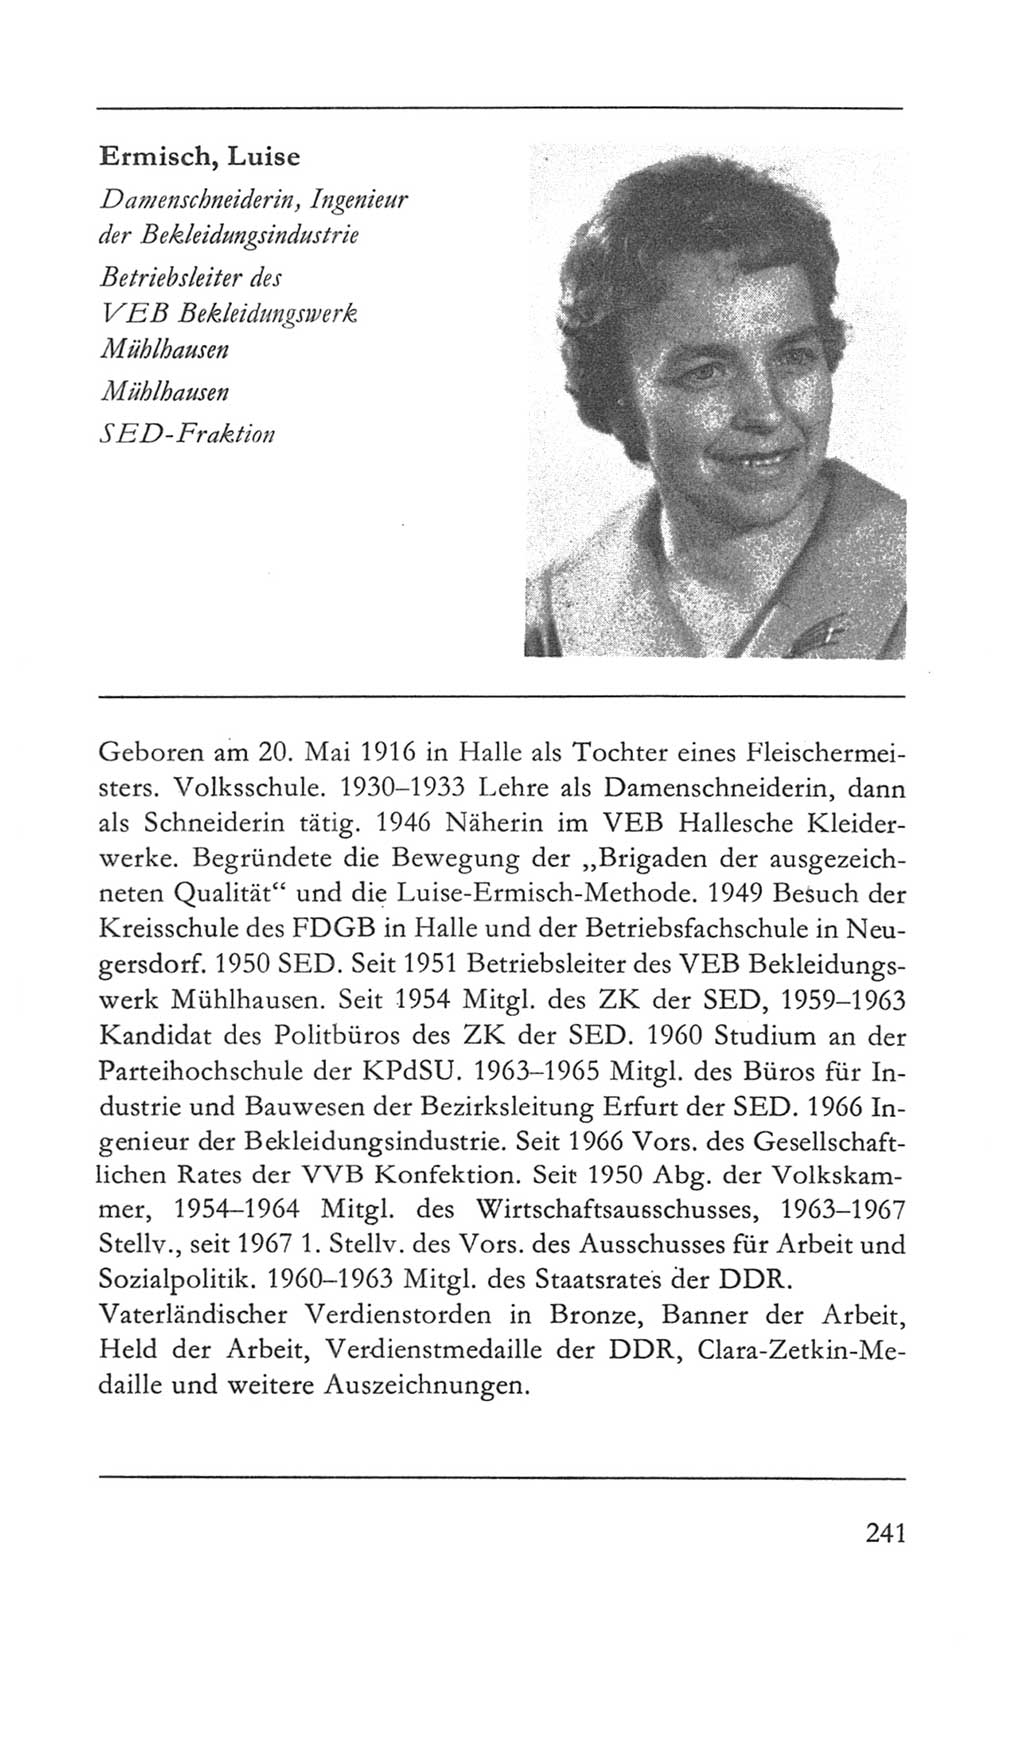 Volkskammer (VK) der Deutschen Demokratischen Republik (DDR) 5. Wahlperiode 1967-1971, Seite 241 (VK. DDR 5. WP. 1967-1971, S. 241)